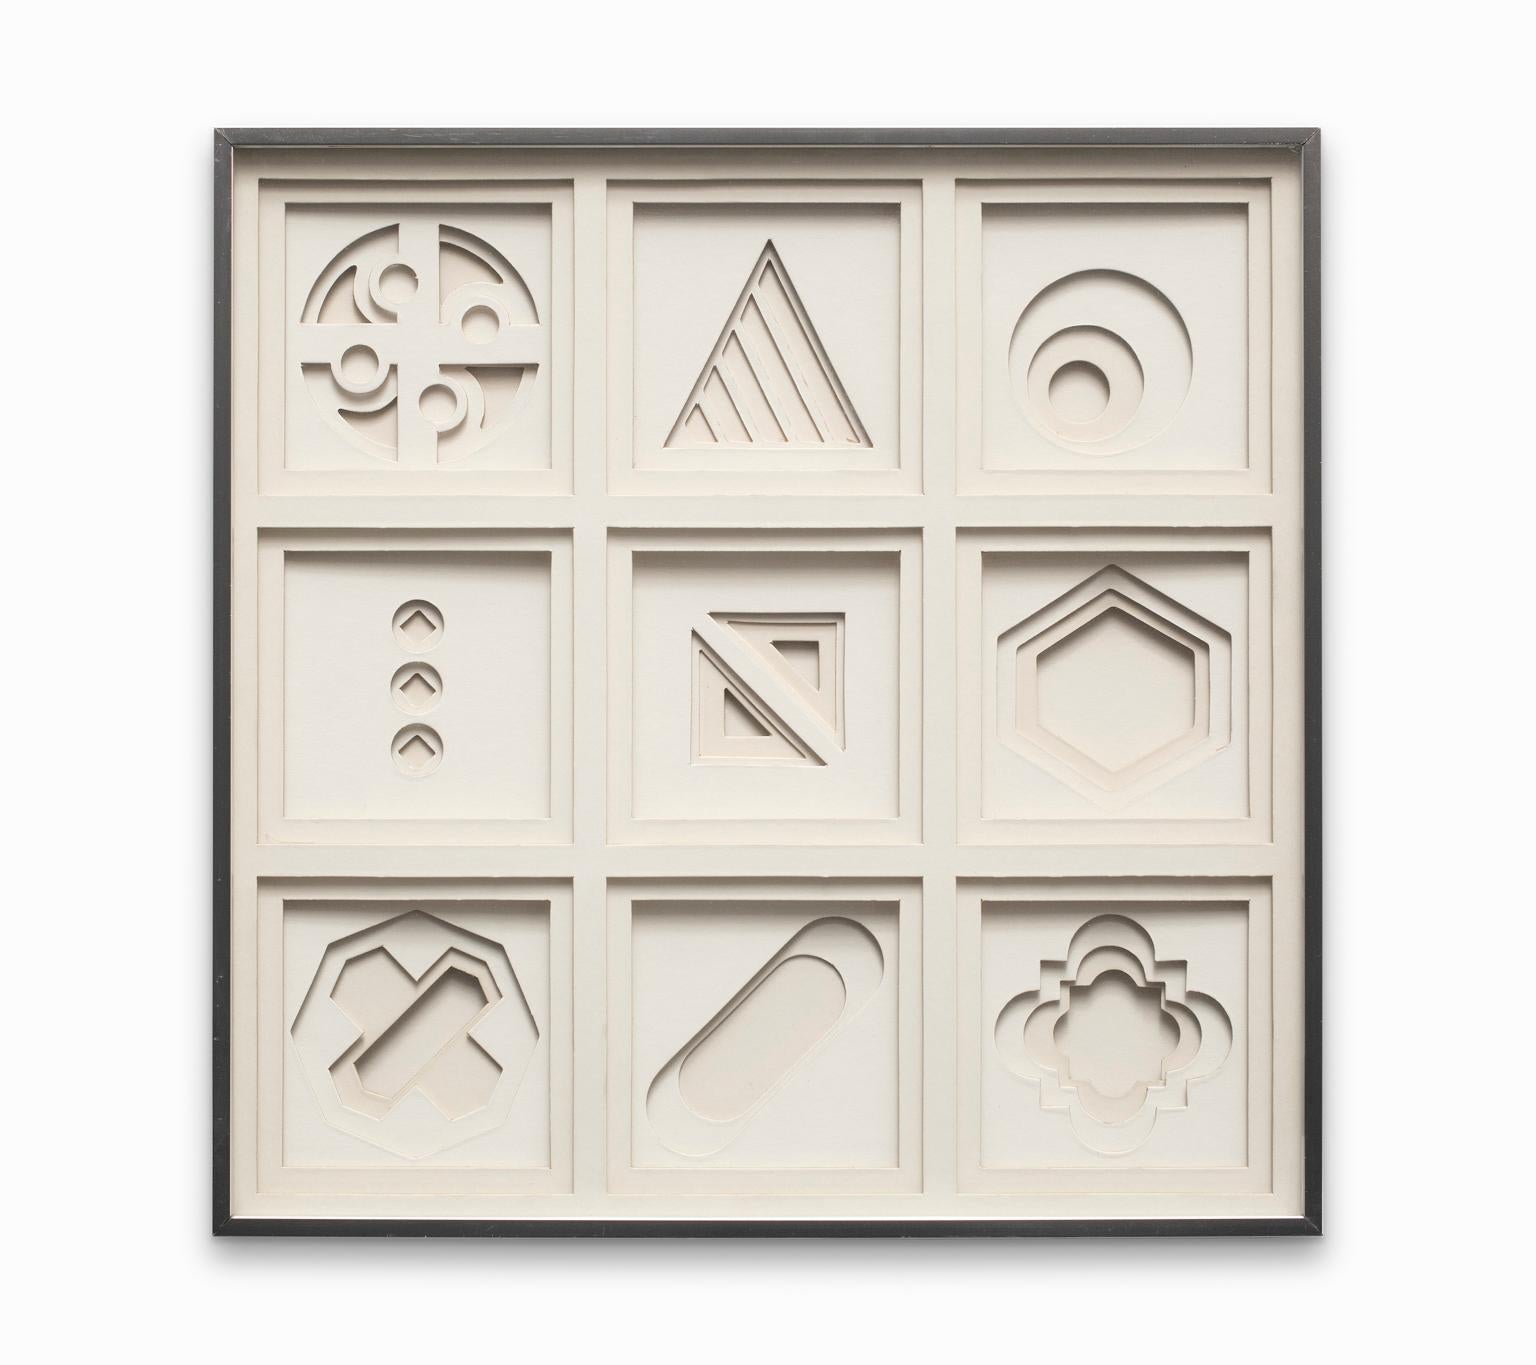 Neun einzigartige dreidimensionale, mehrschichtige abstrakte strukturelle und architektonische Formen füllen den Rahmen, wobei die durch die Schichtung geworfenen Schatten noch interessanter wirken. Greg Copeland war der Meister dieser modernen